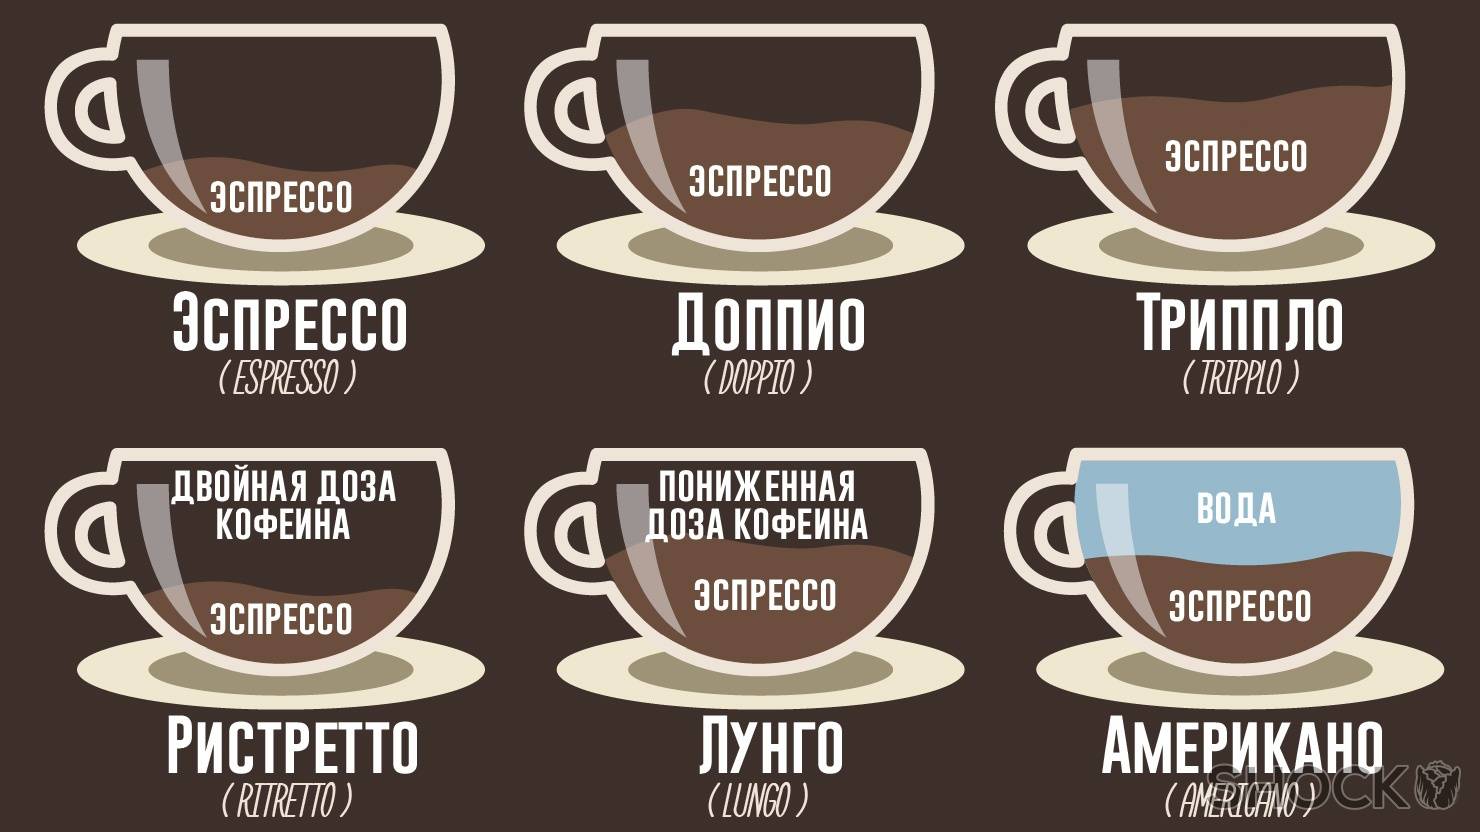 Кофе лунго (lungo) - что такое, рецепт, подача, отличие от капучино и американо